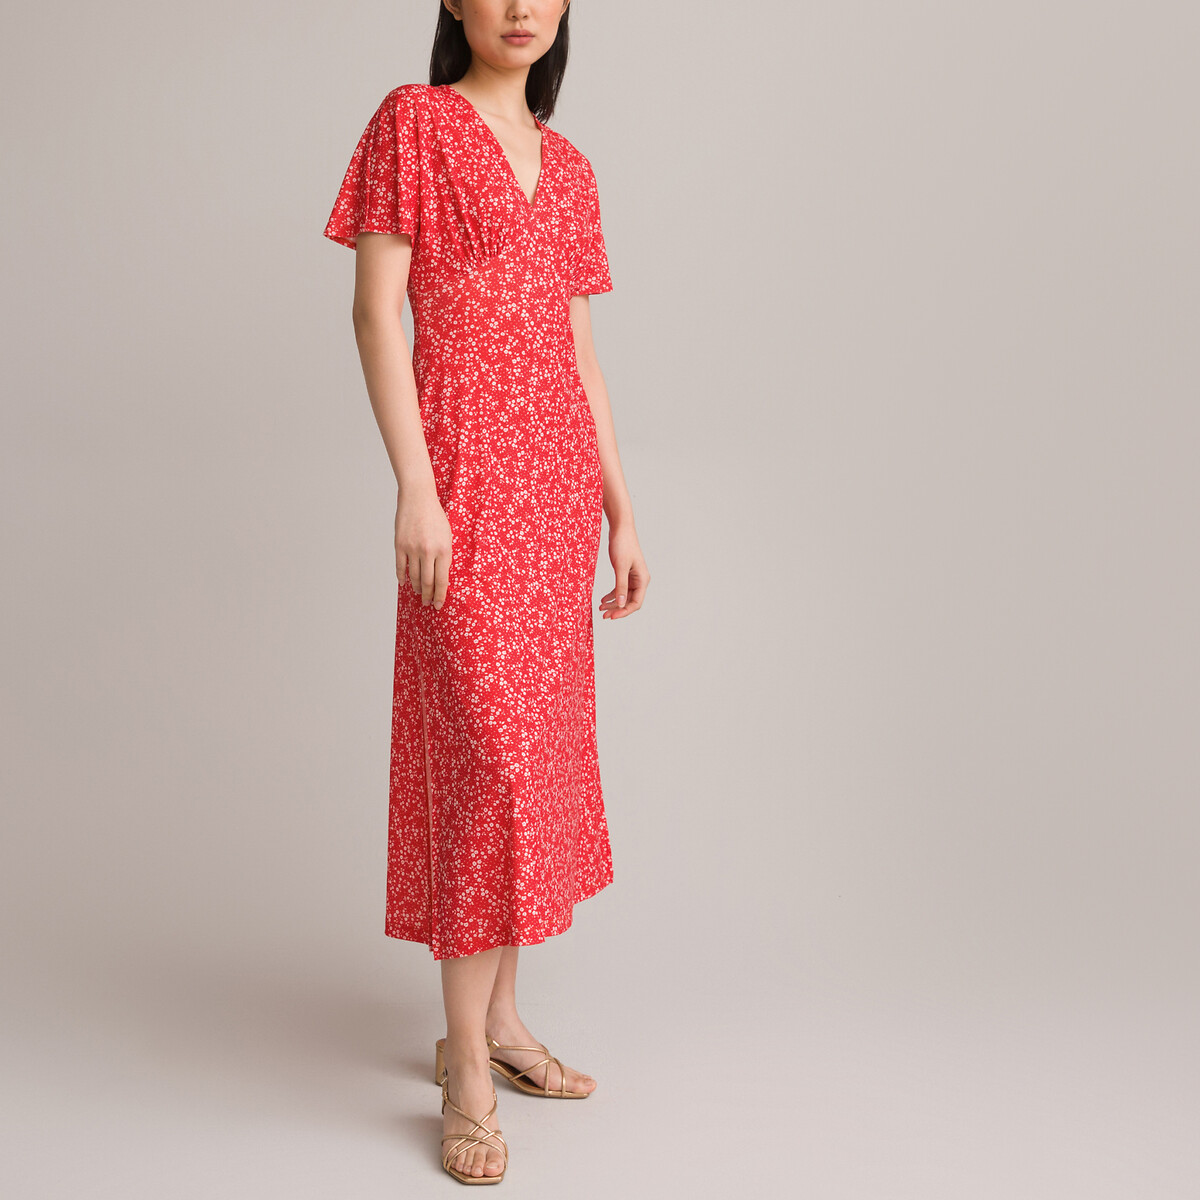 Платье Длинное расклешенное с принтом цветы 54 красный LaRedoute, размер 54 - фото 2